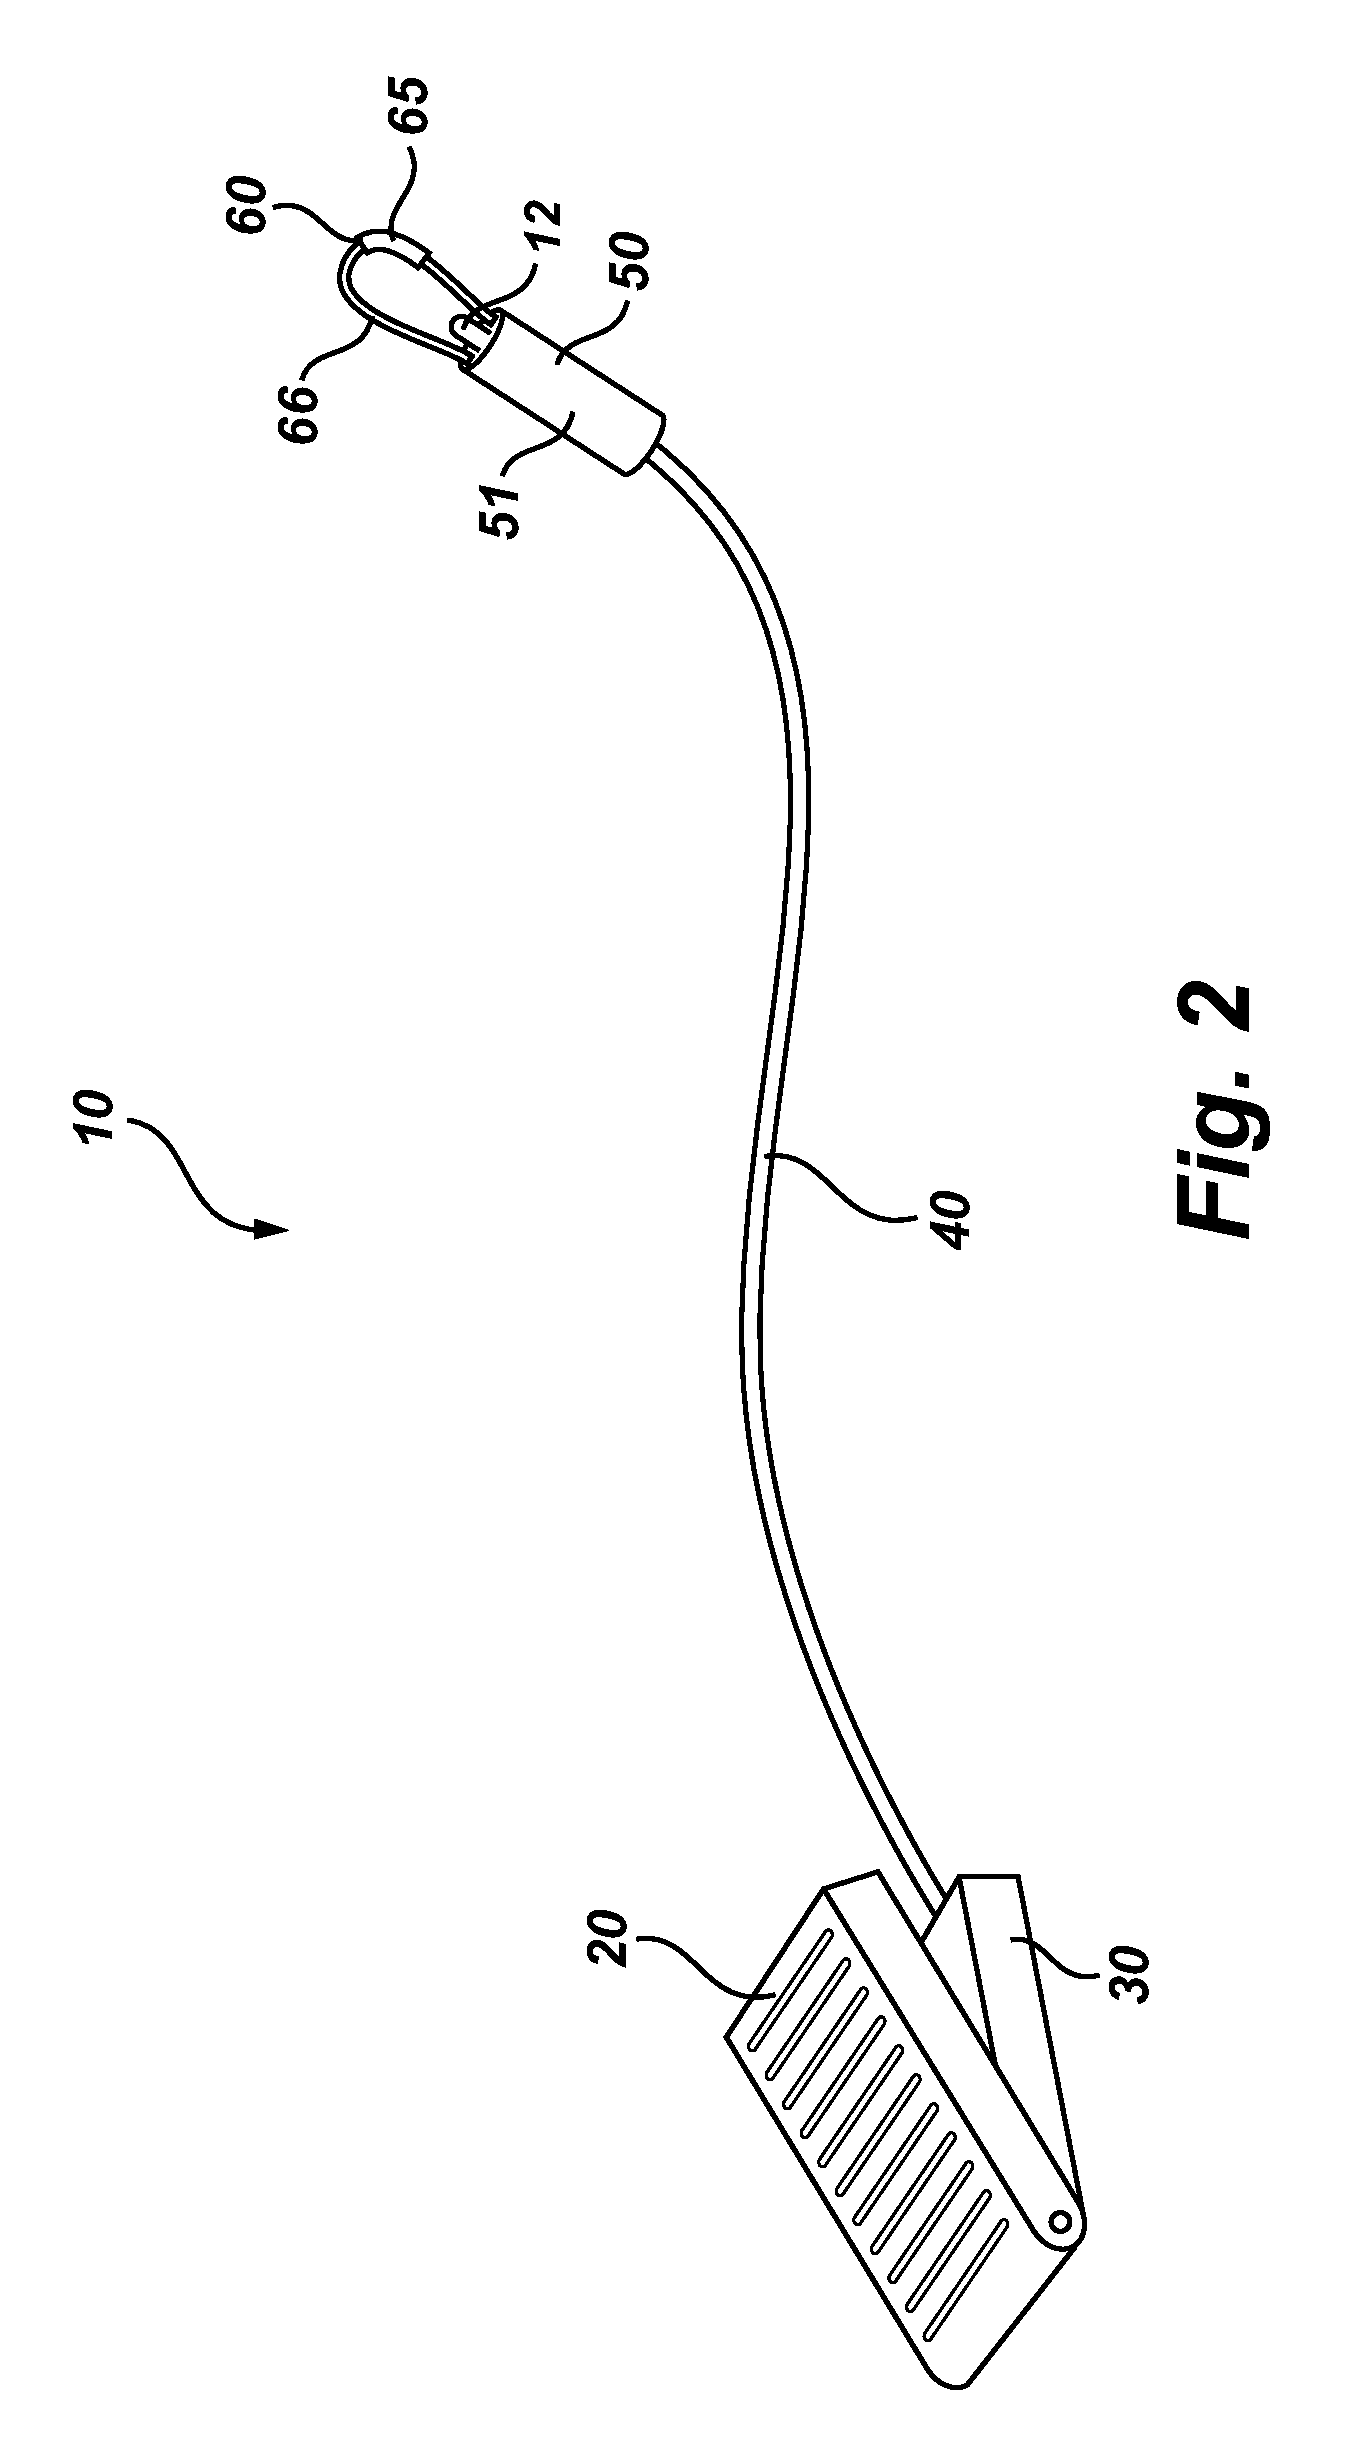 Heated balloon catheter